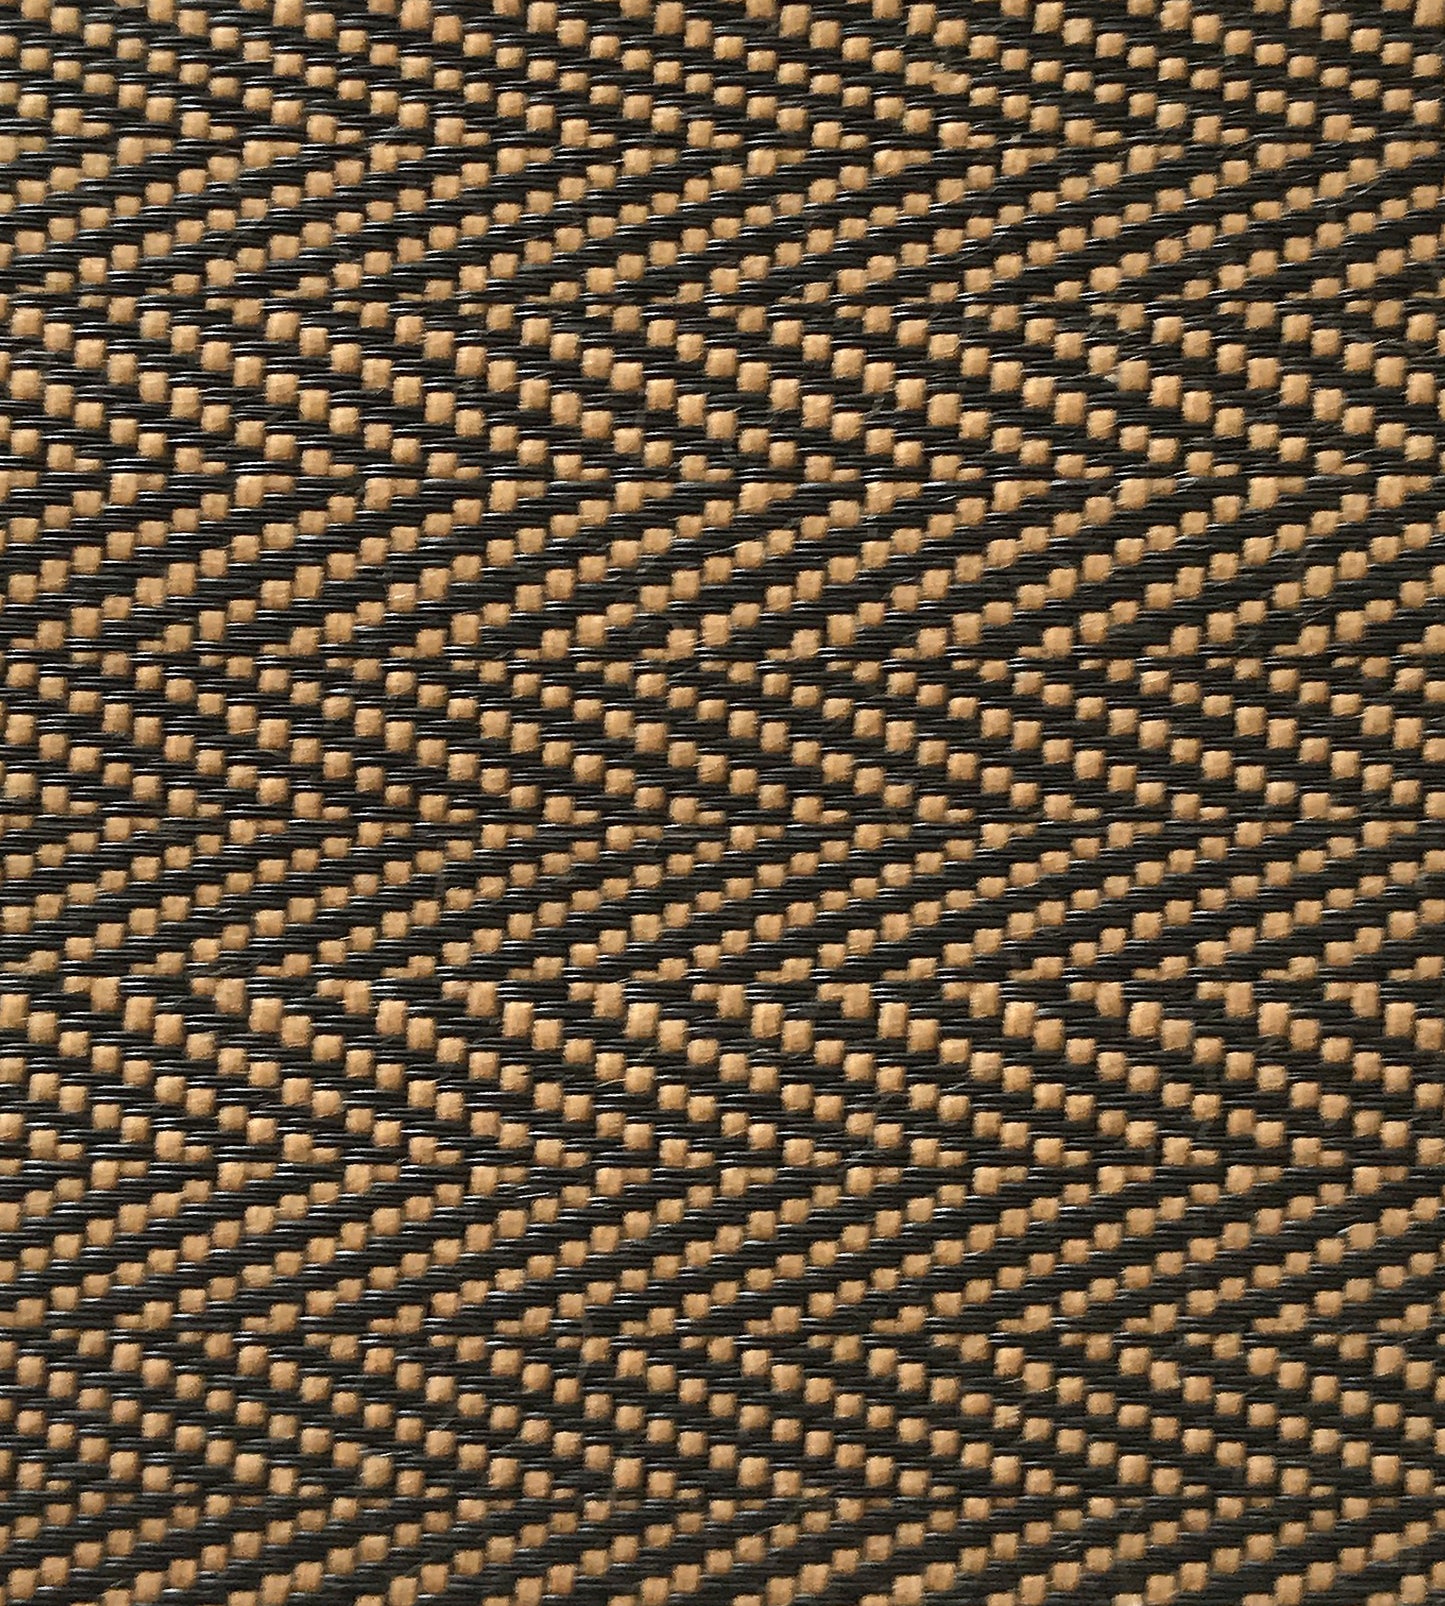 Purchase Old World Weavers Fabric Pattern number SK 0002MI65, Milzig Herringbone - Horsehair Brown / Black 1